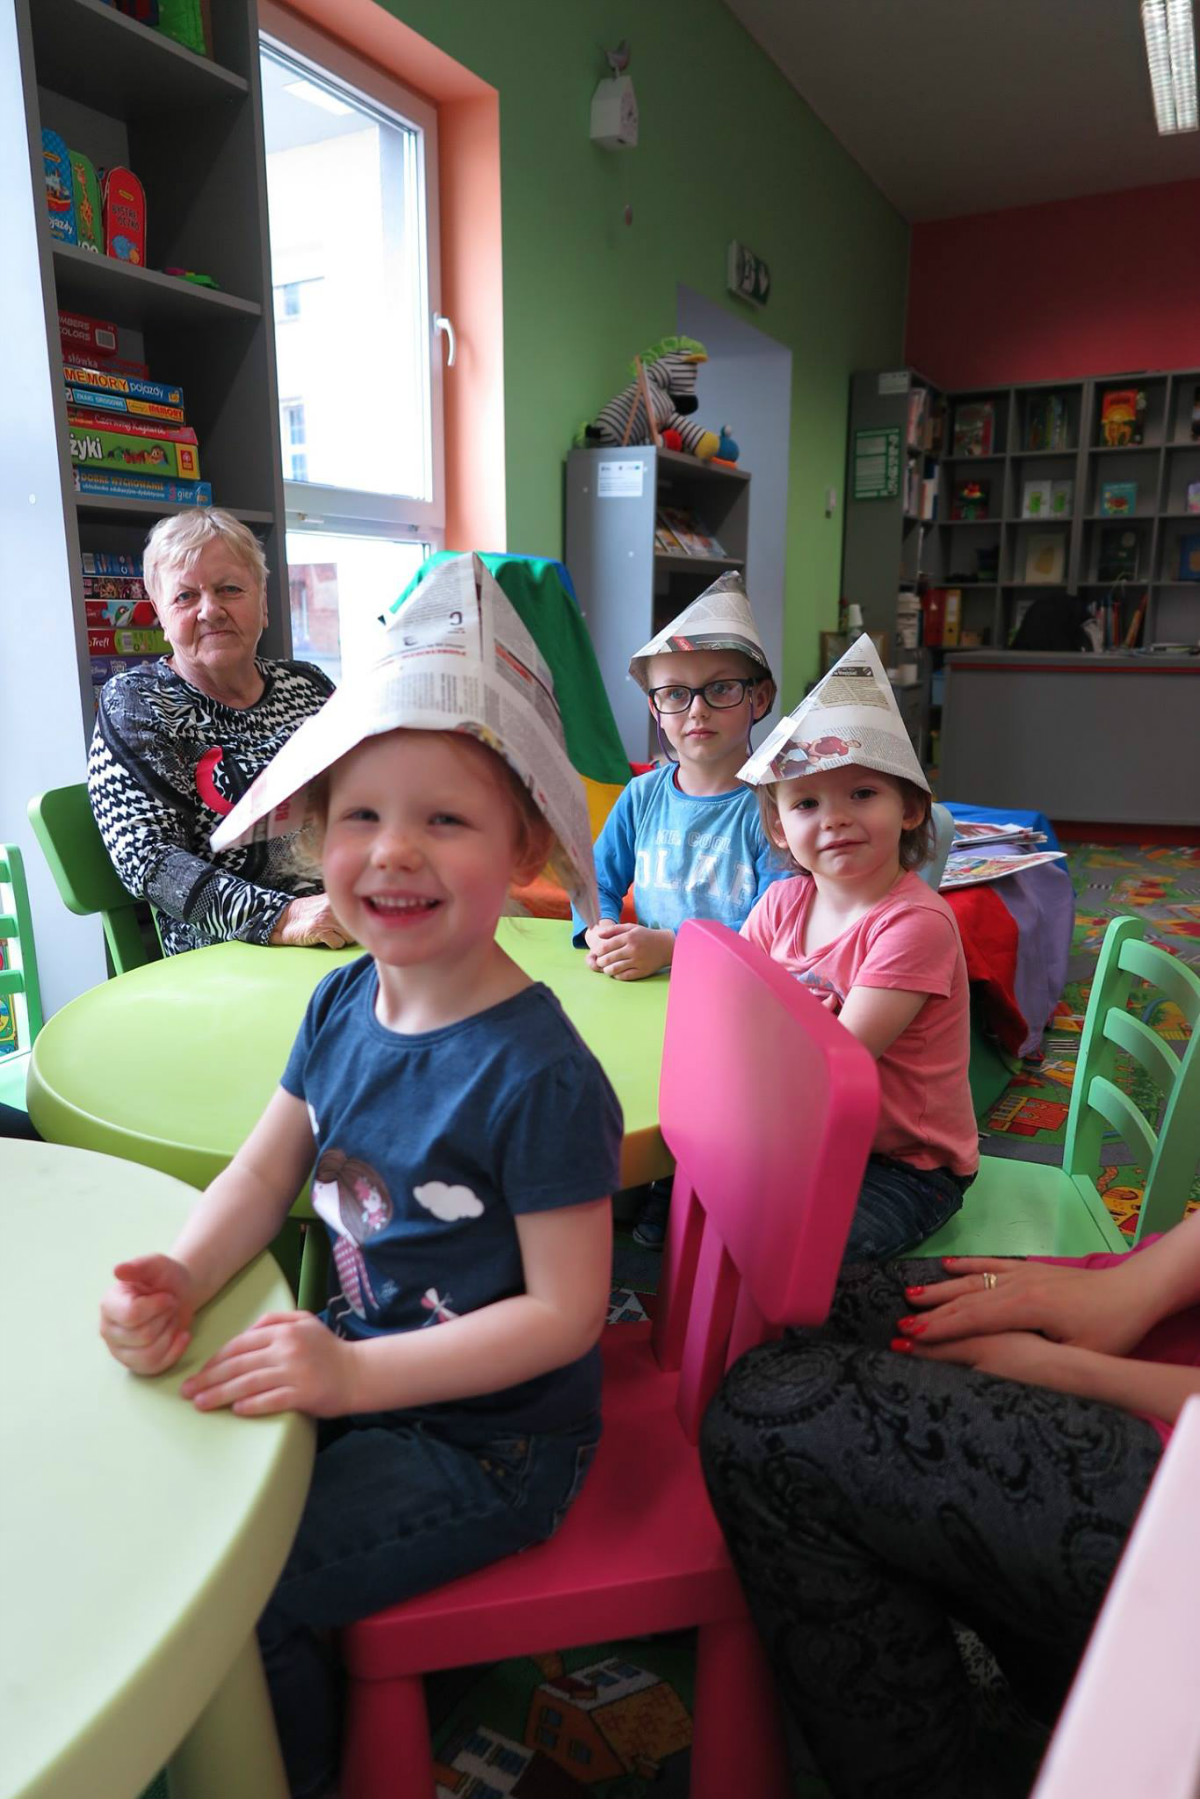 Przy stoliku siedzi opiekunka i troje dzieci z papierowymi czapkami na głowie. 